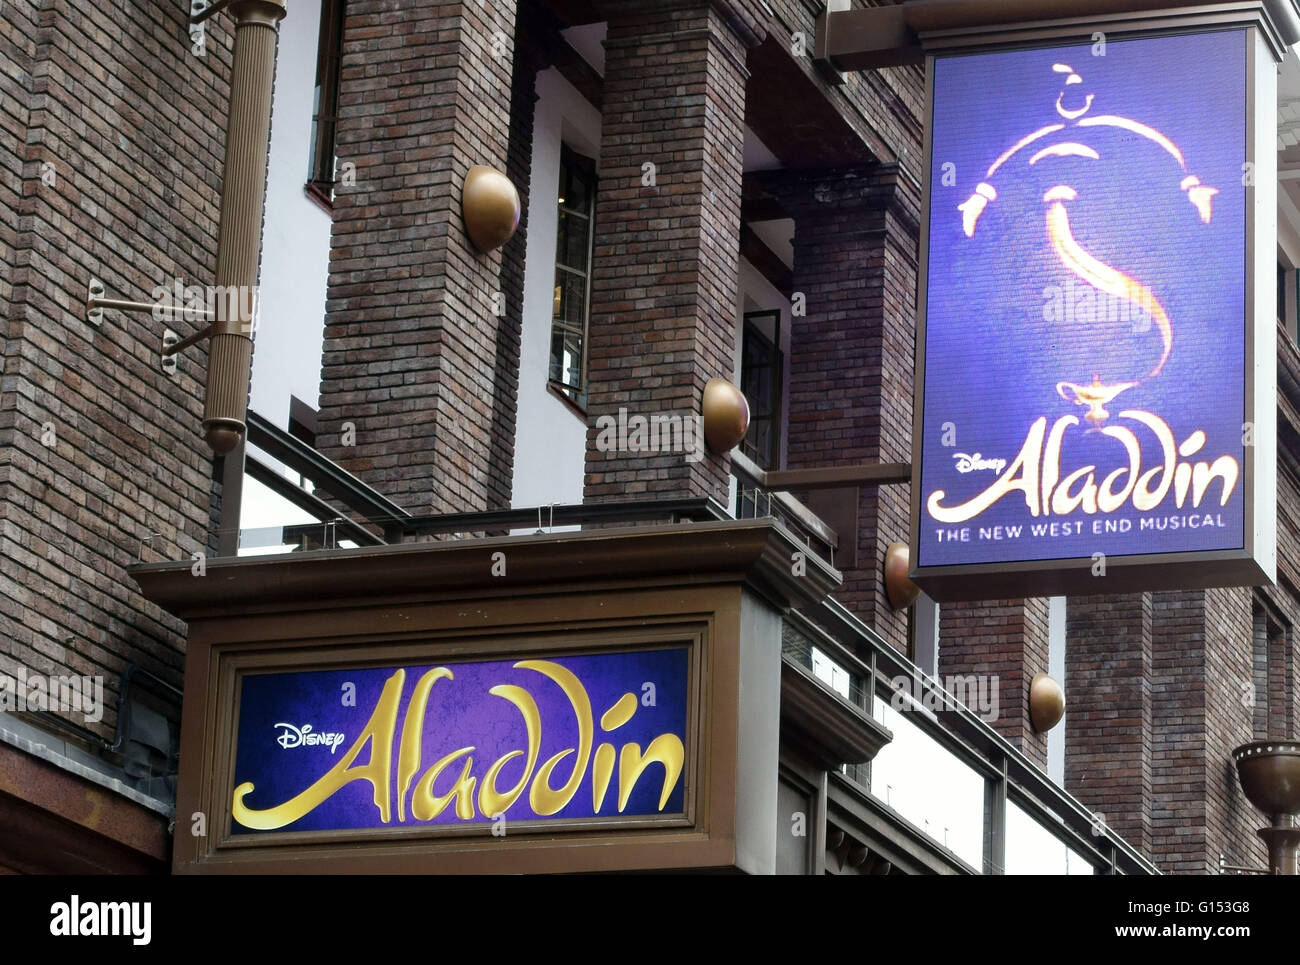 Le Disney's 'Aladdin' musical au Prince Edward Theatre dans le West End de Londres Banque D'Images